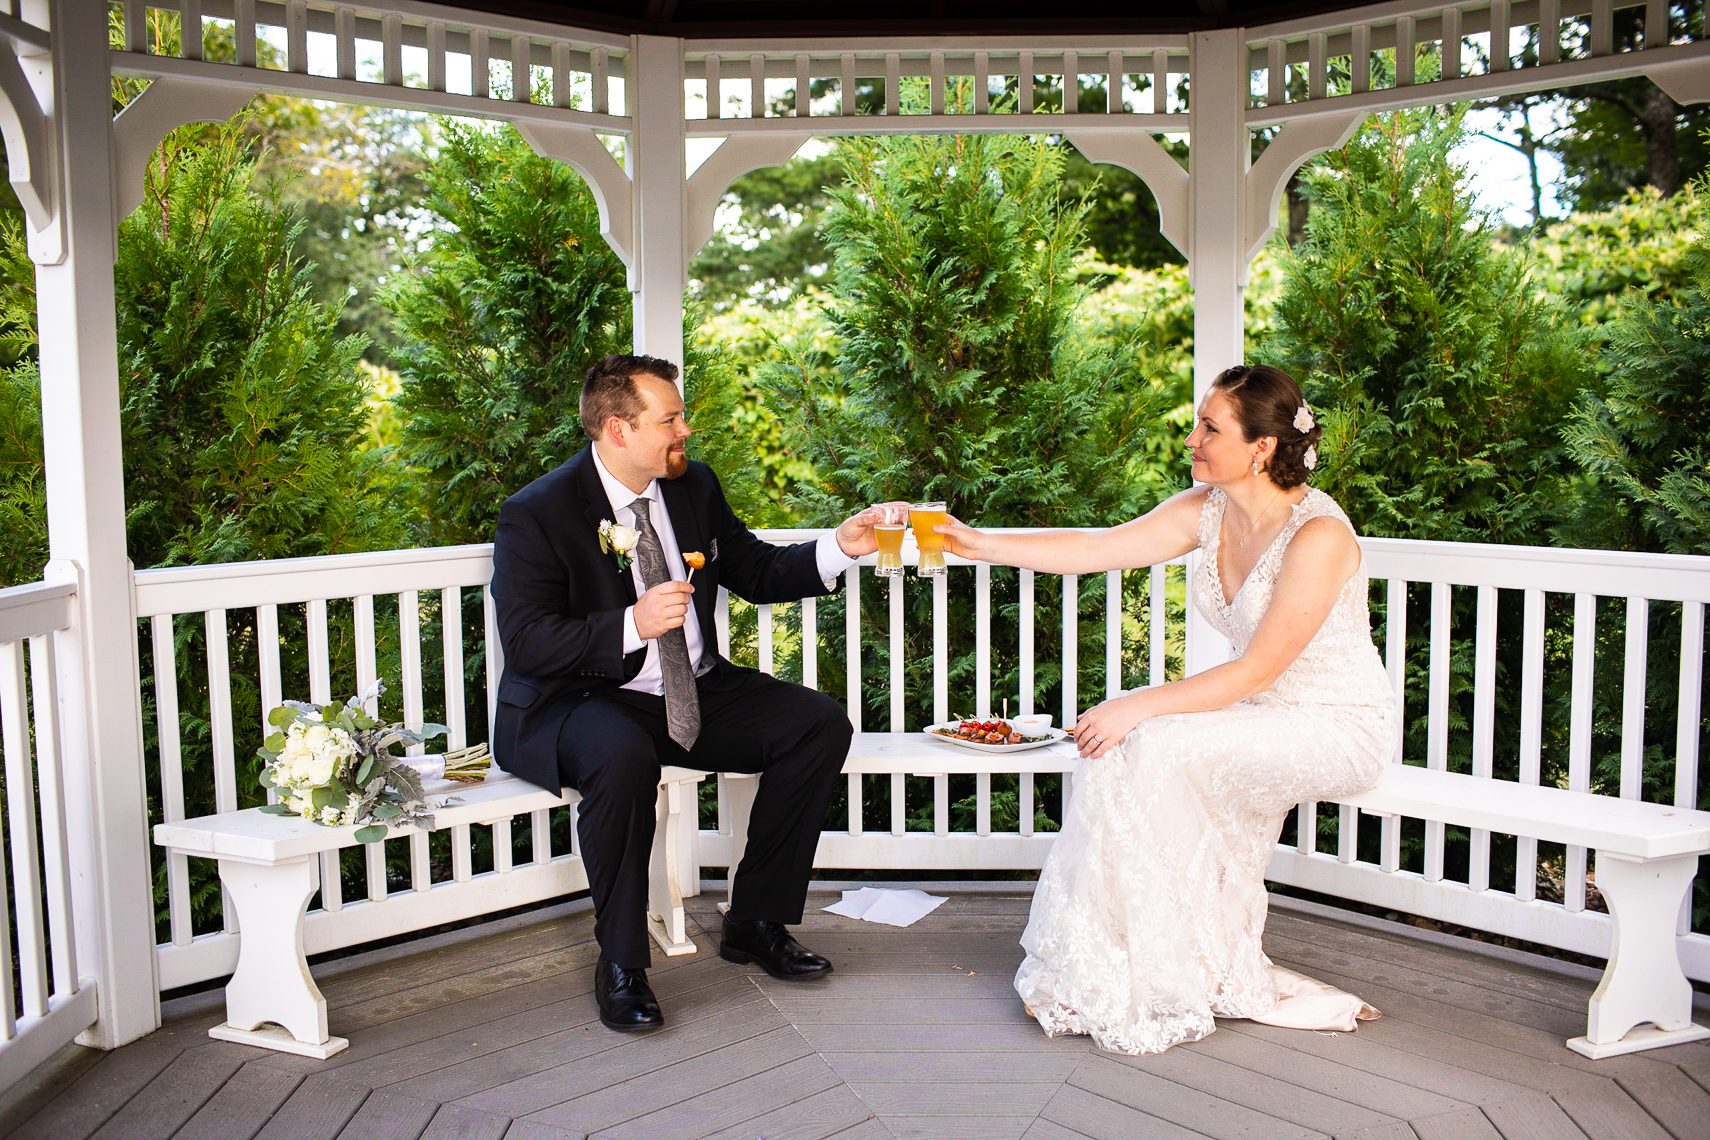 bride-and-groom-cheers-on-wedding-day-massachusetts